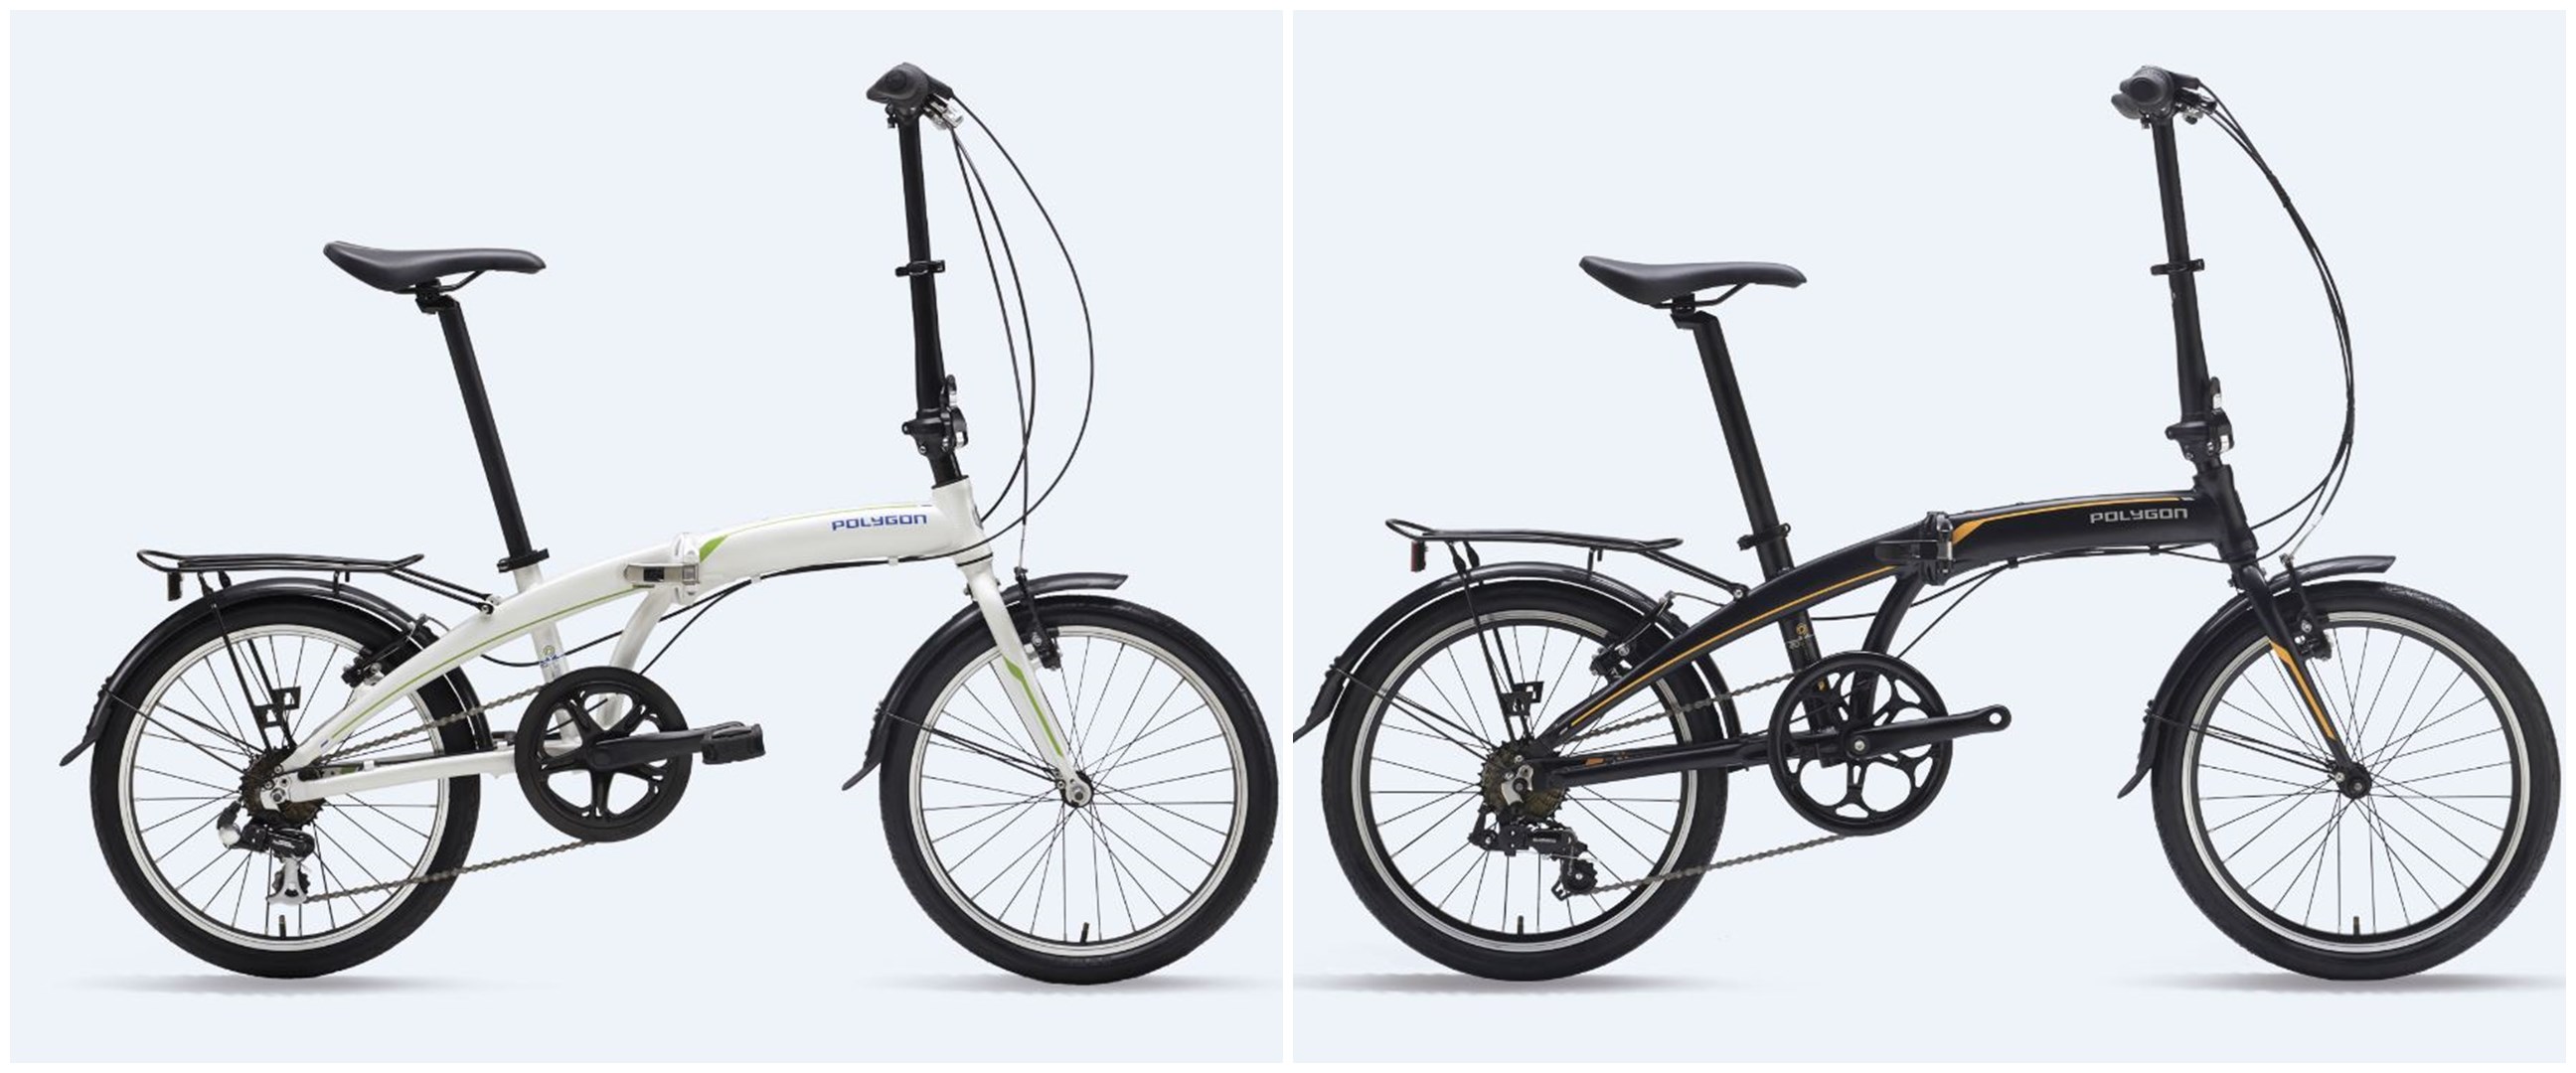  Harga  sepeda  lipat Polygon  Urbano dan  spesifikasinya 